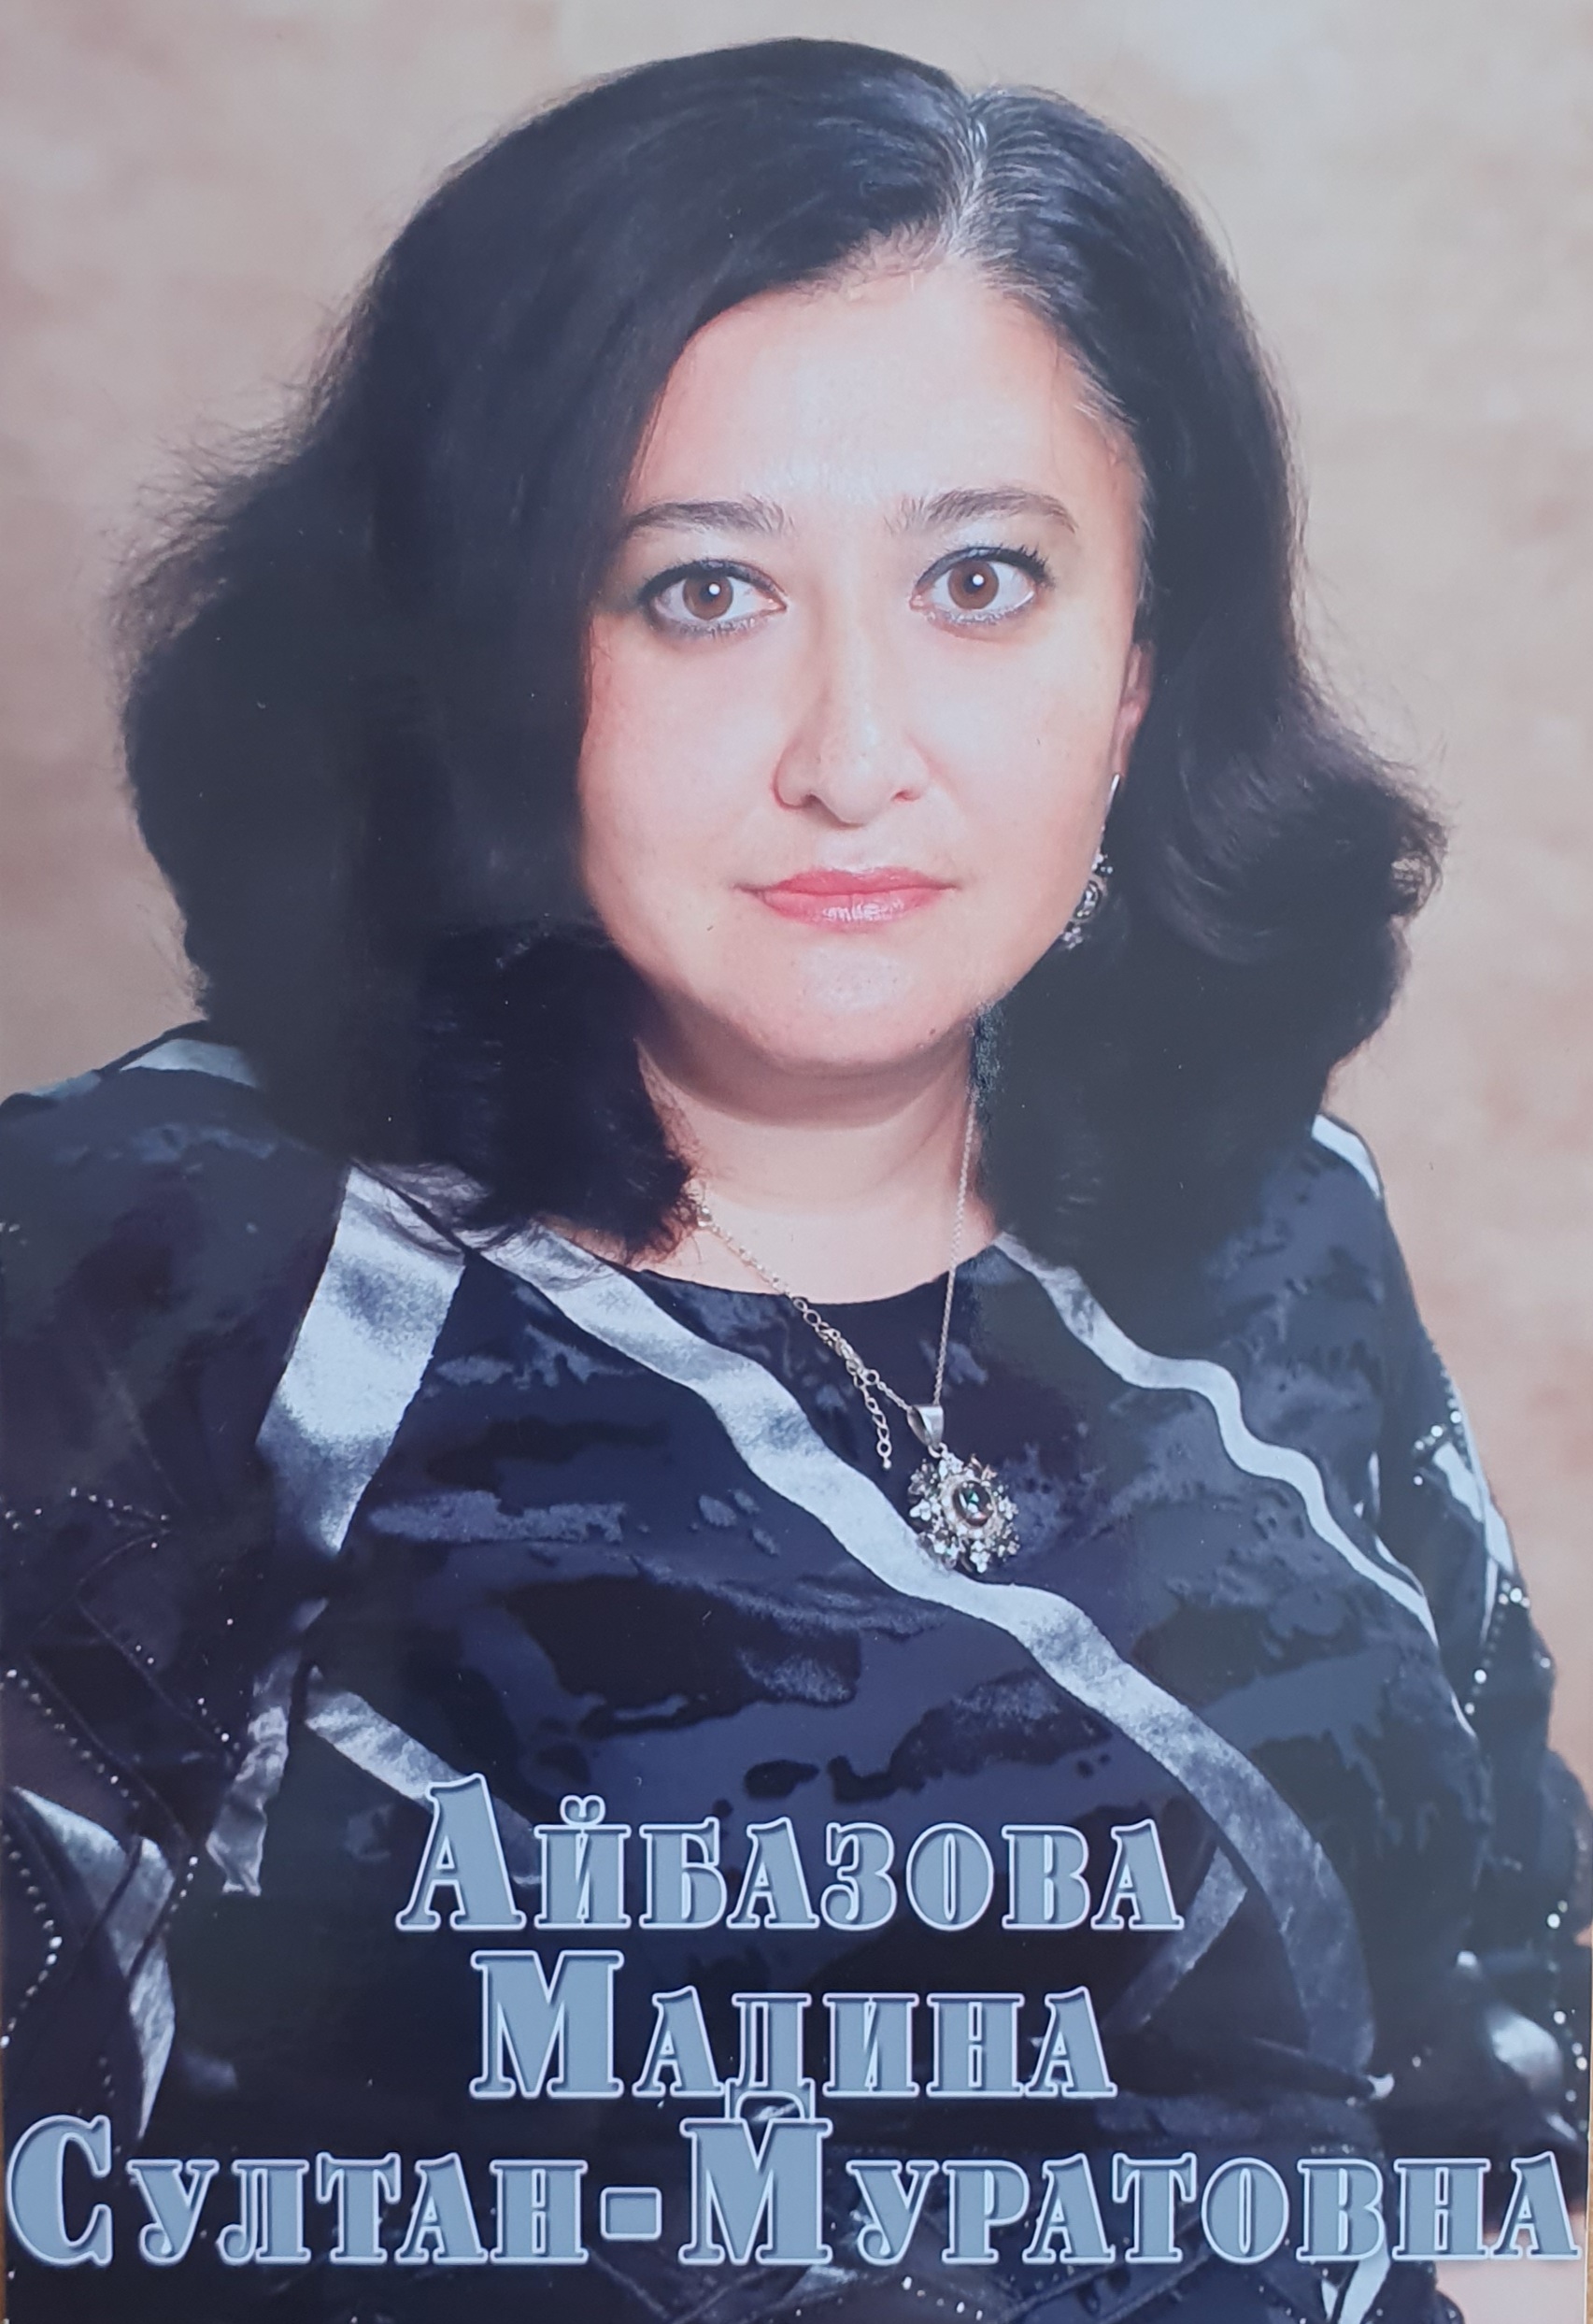 Айбазова Мадина Султан-Муратовна.